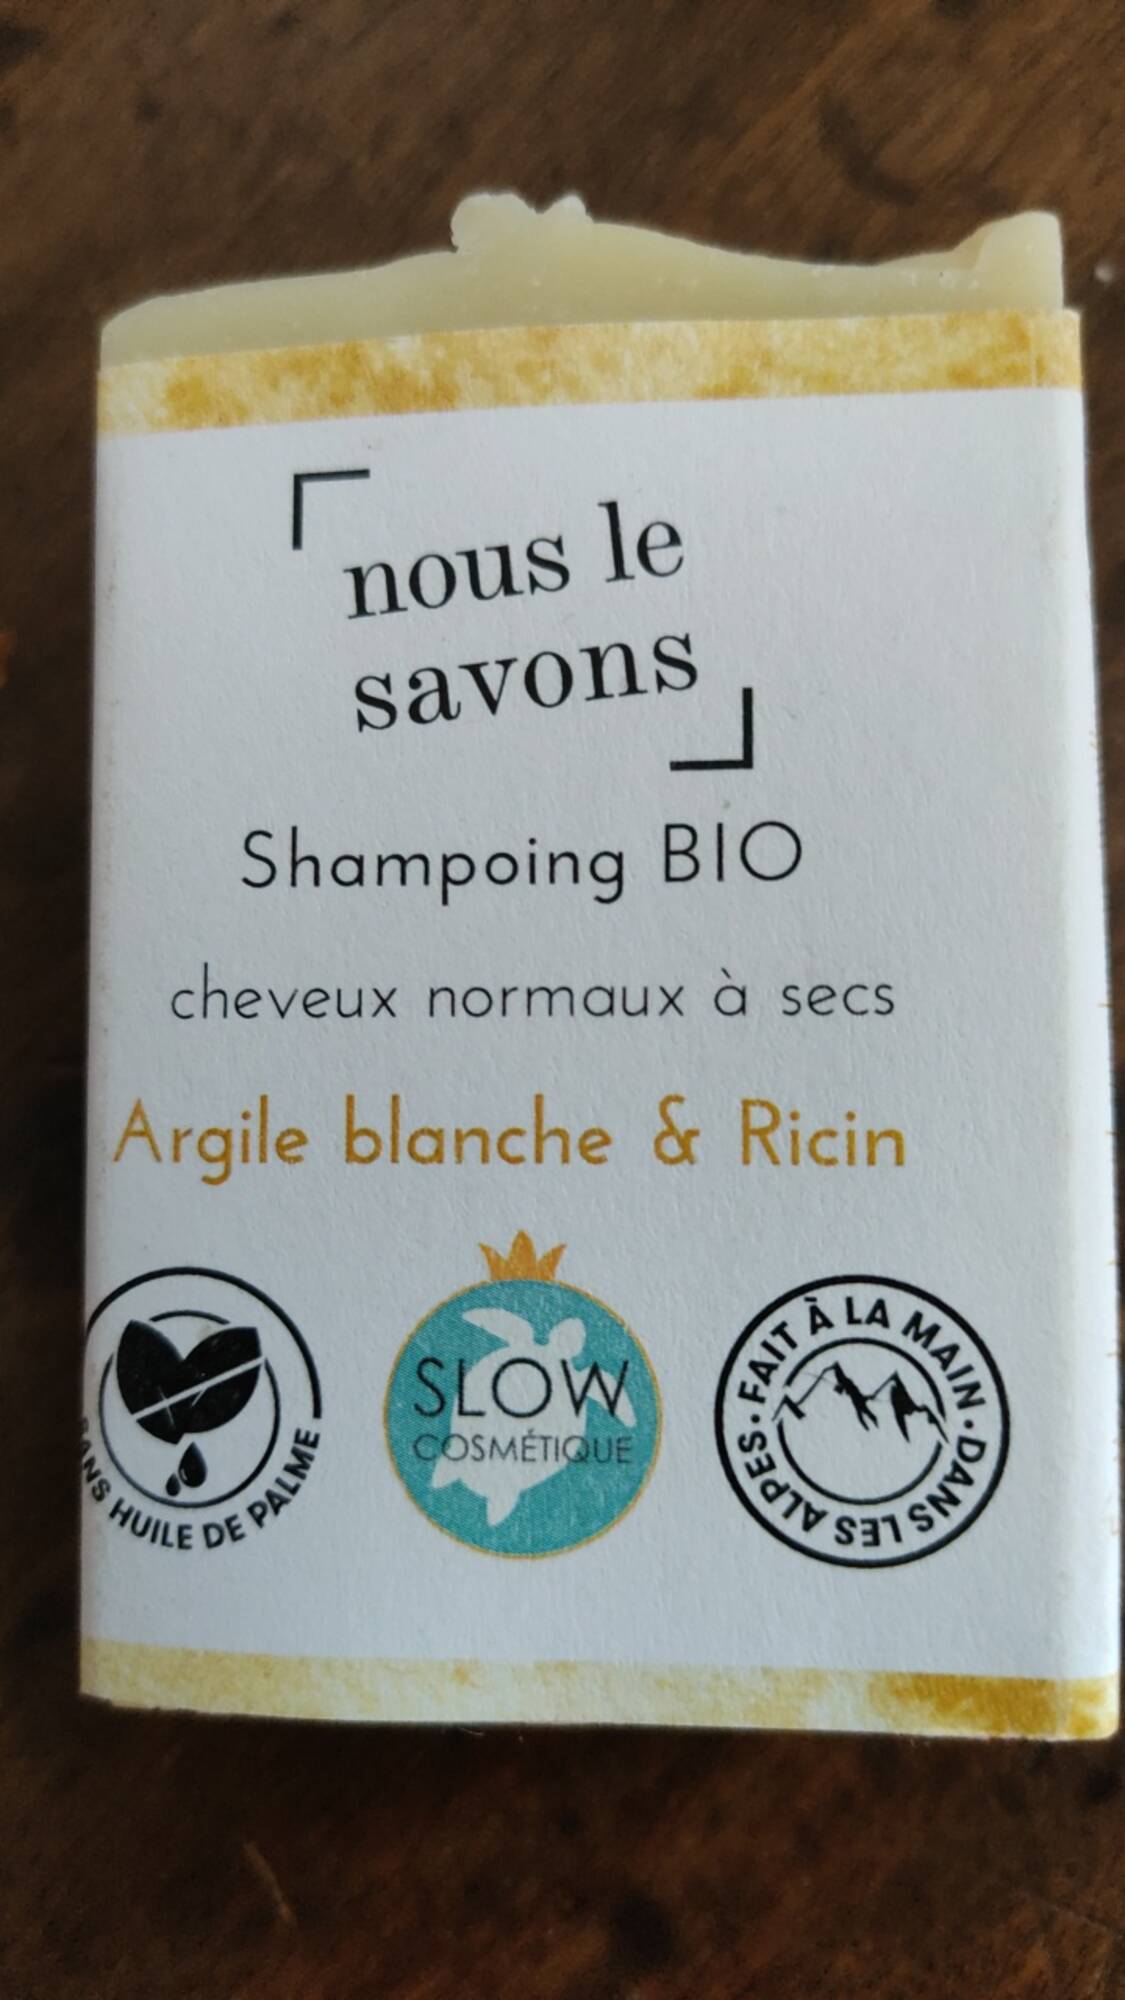 NOUS LE SAVONS - Shampooing bio argile blanche & ricin